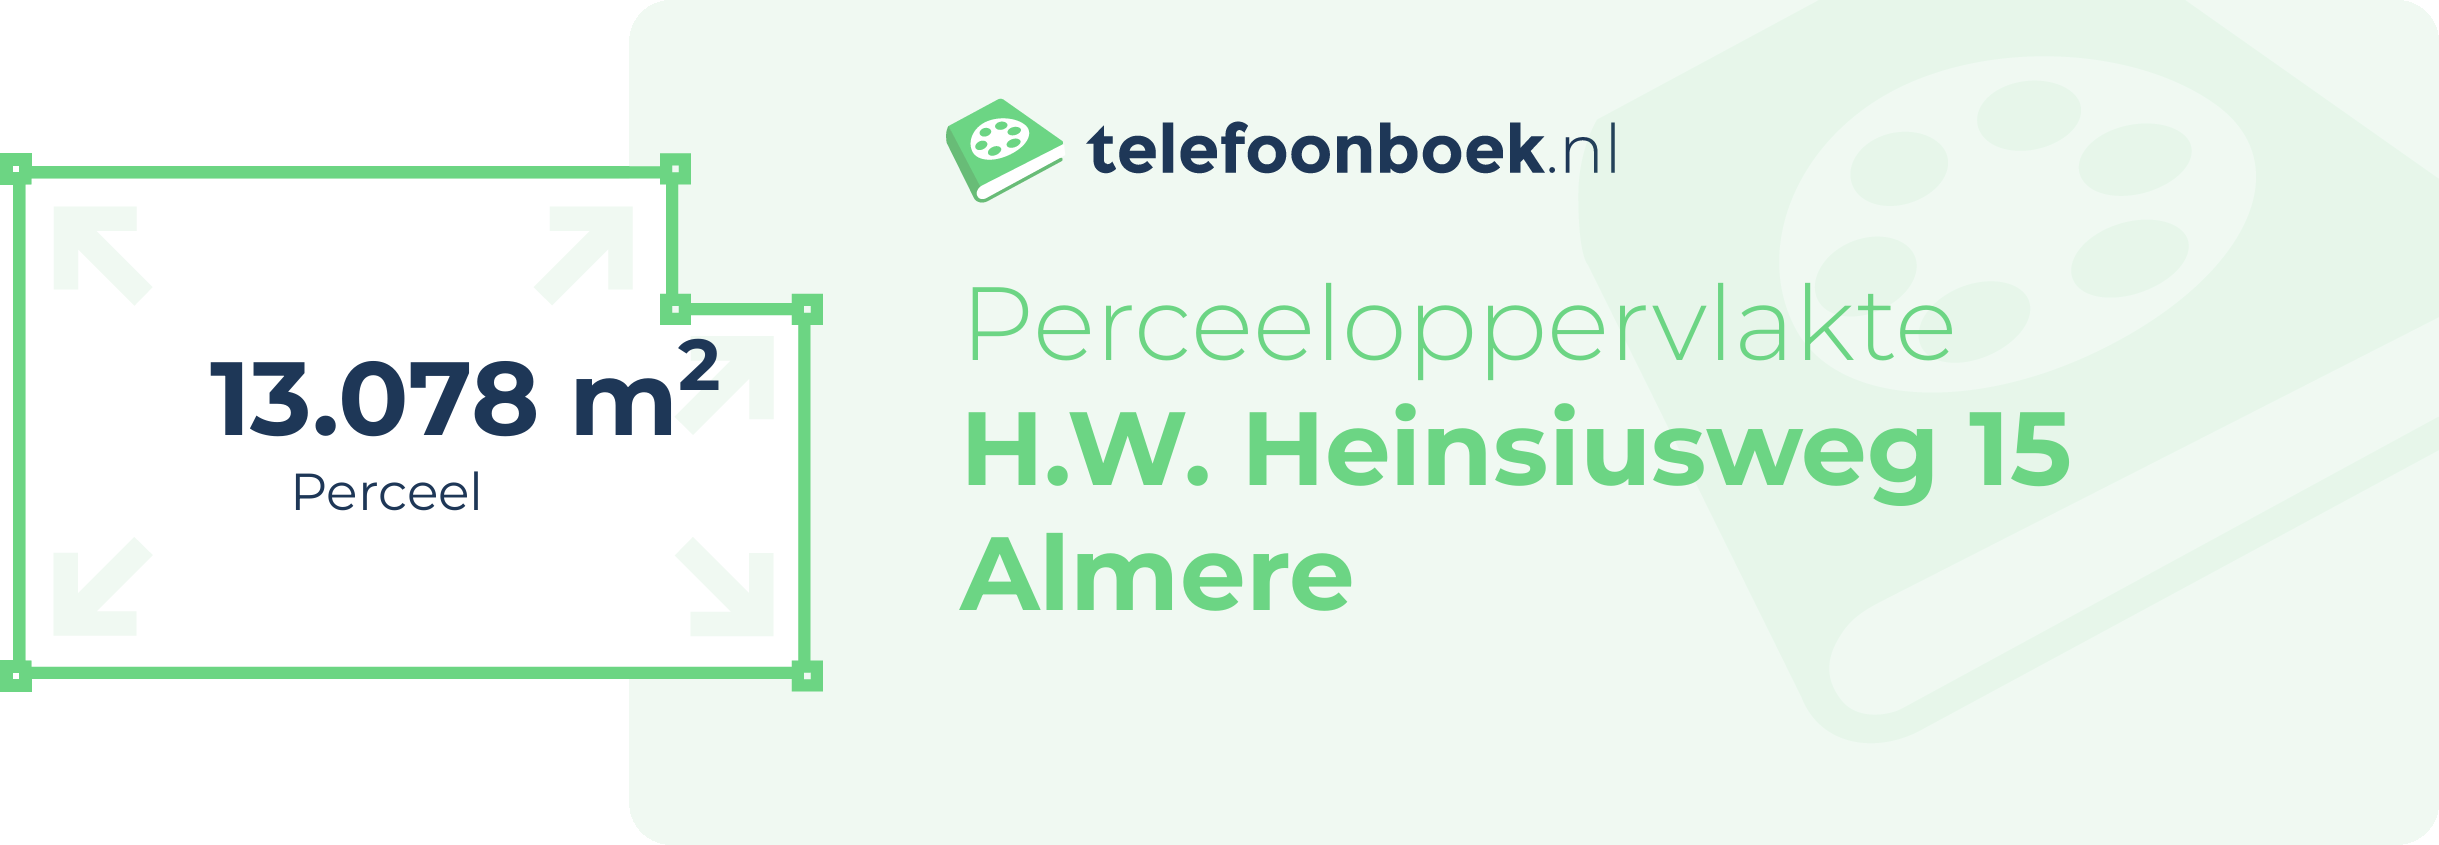 Perceeloppervlakte H.W. Heinsiusweg 15 Almere